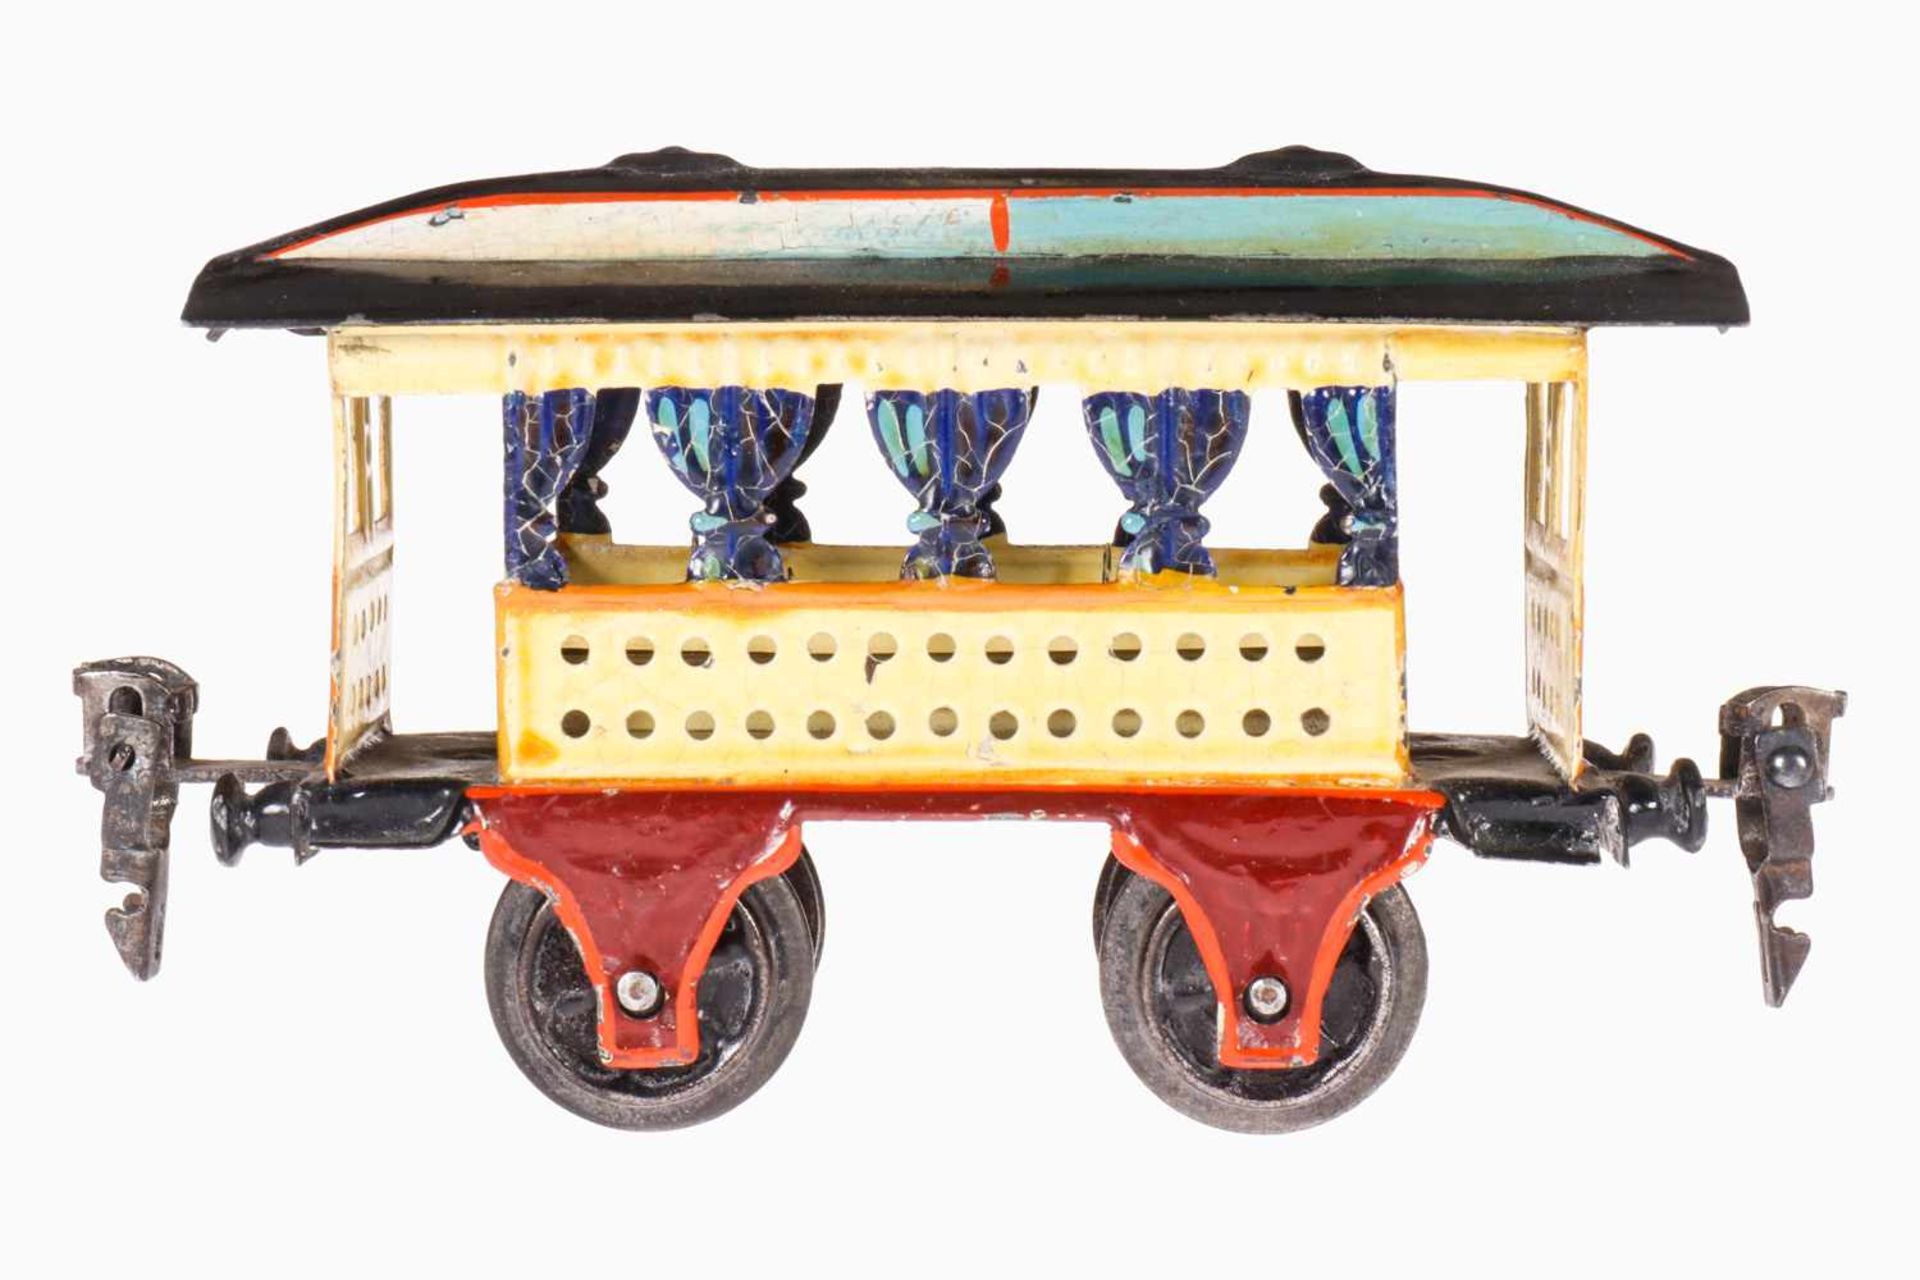 Märklin Sommerwagen 1825, Spur 0, uralt, handlackiert, mit Inneneinrichtung, blaue Vorhänge, Länge